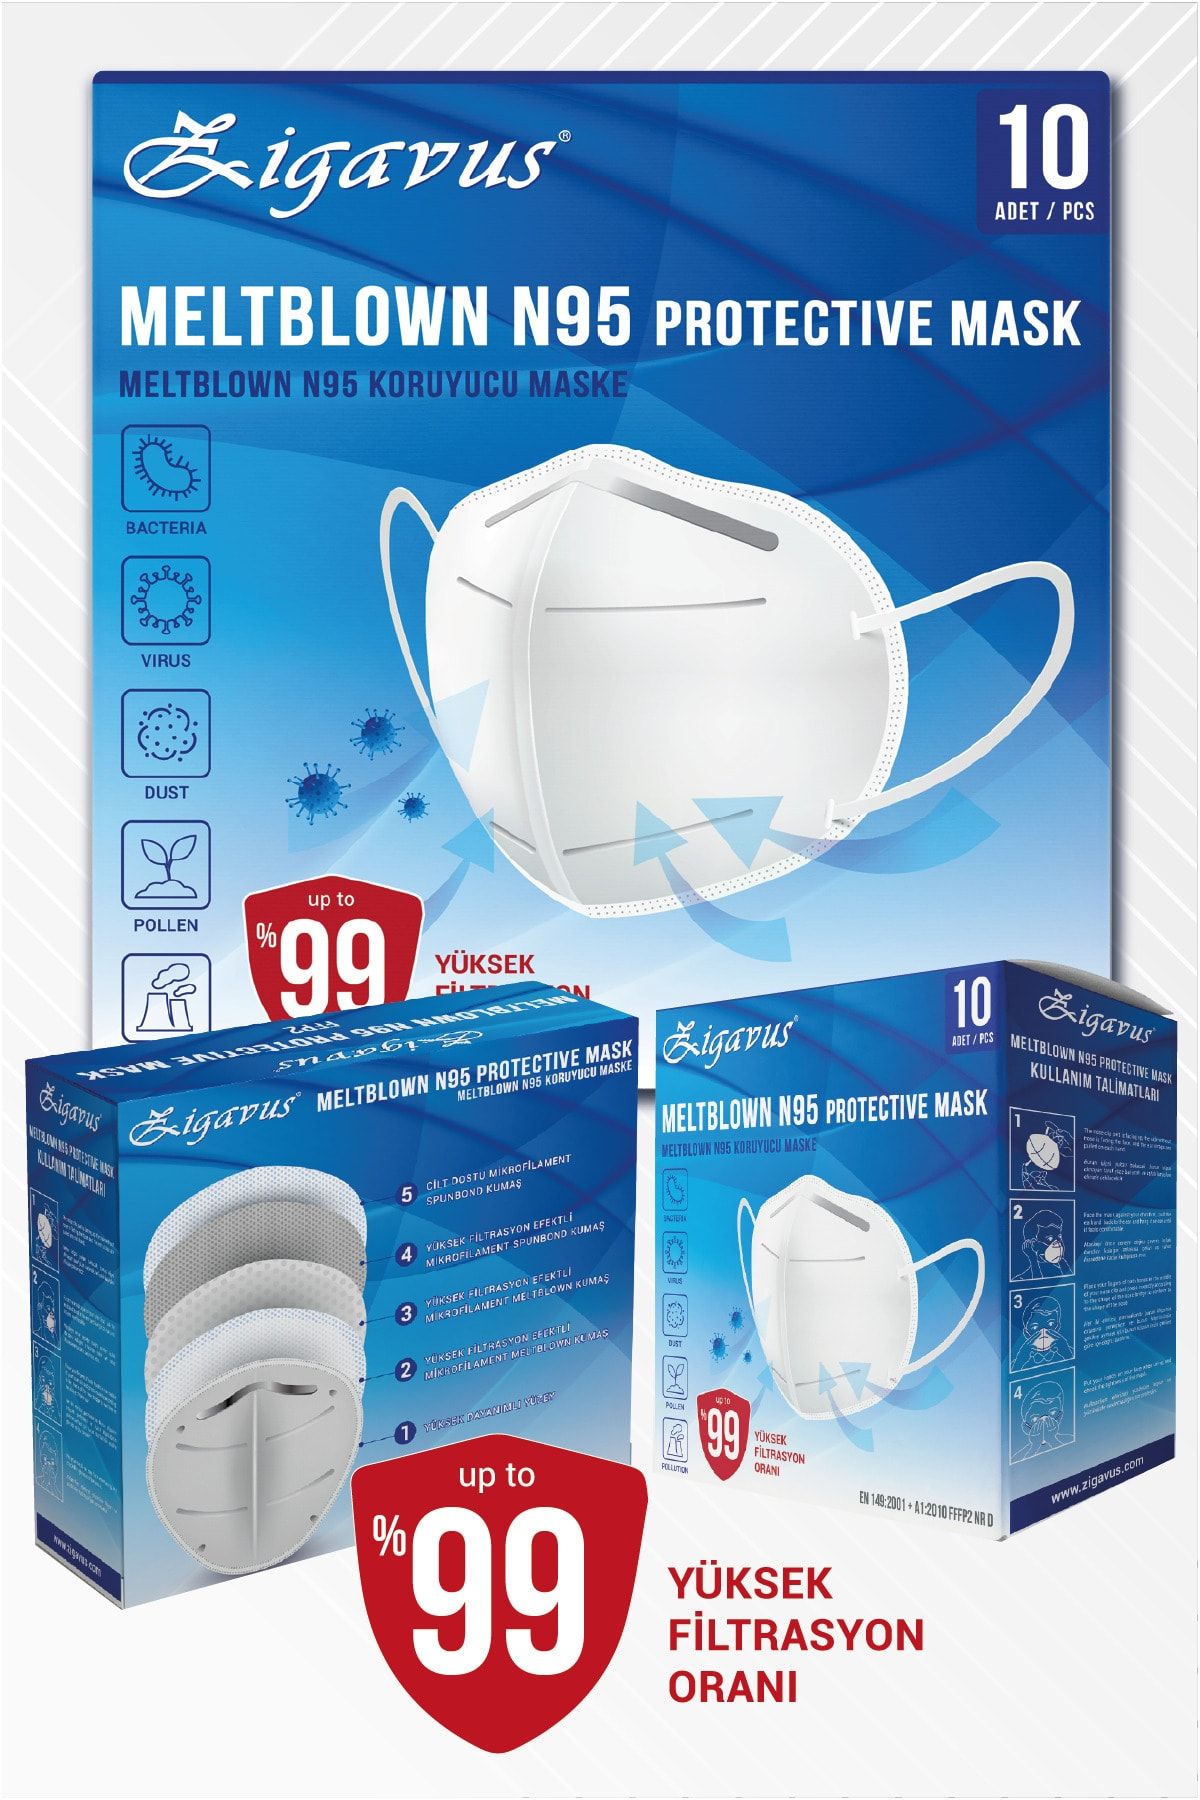 Zigavus N95 Beyaz Maske 40 Adet Meltblown, Ayrı Poşetli, Ventilsiz , Ce Iso